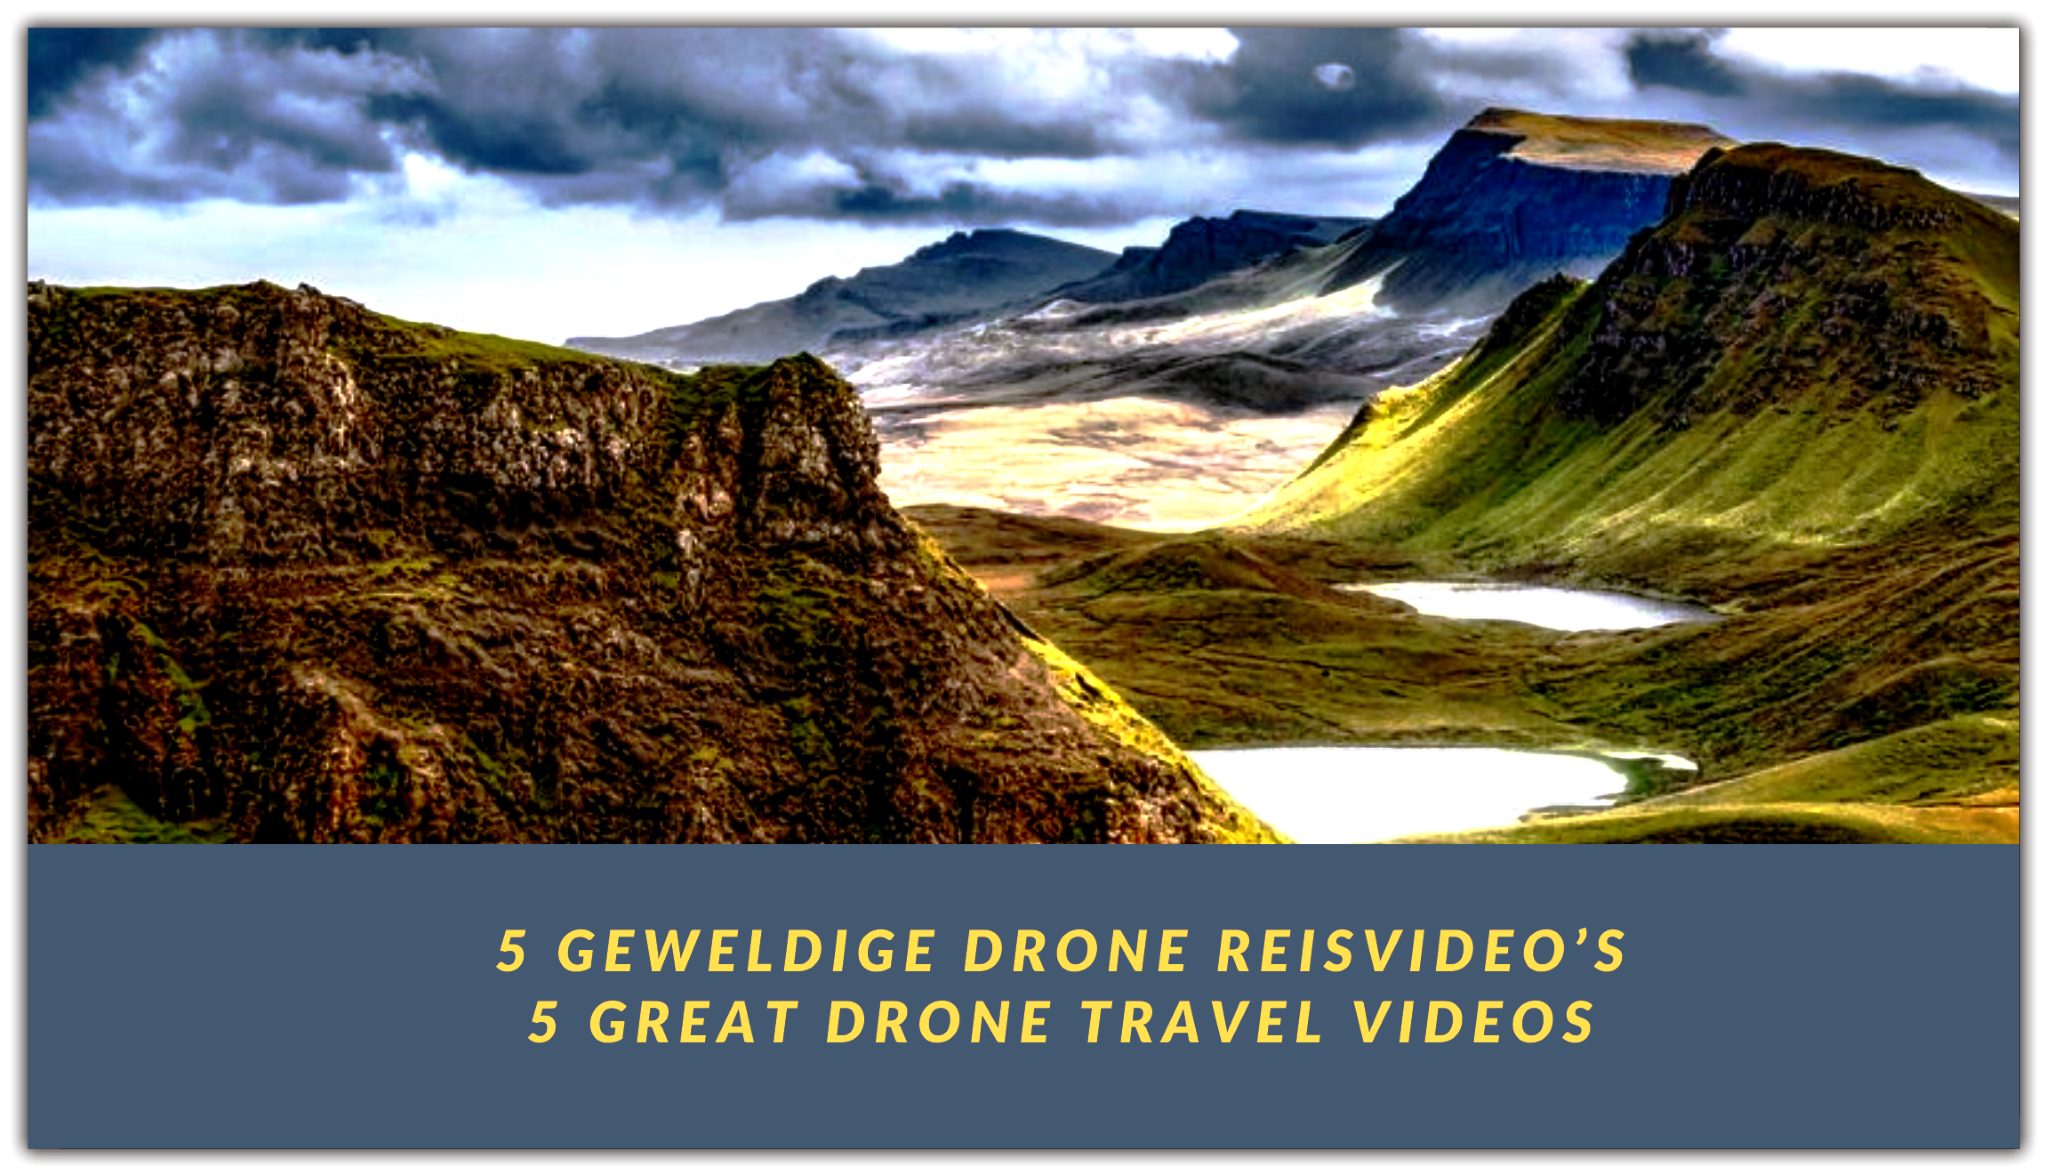 5 geweldige drone reisvideo’s ||5 great drone travel videos